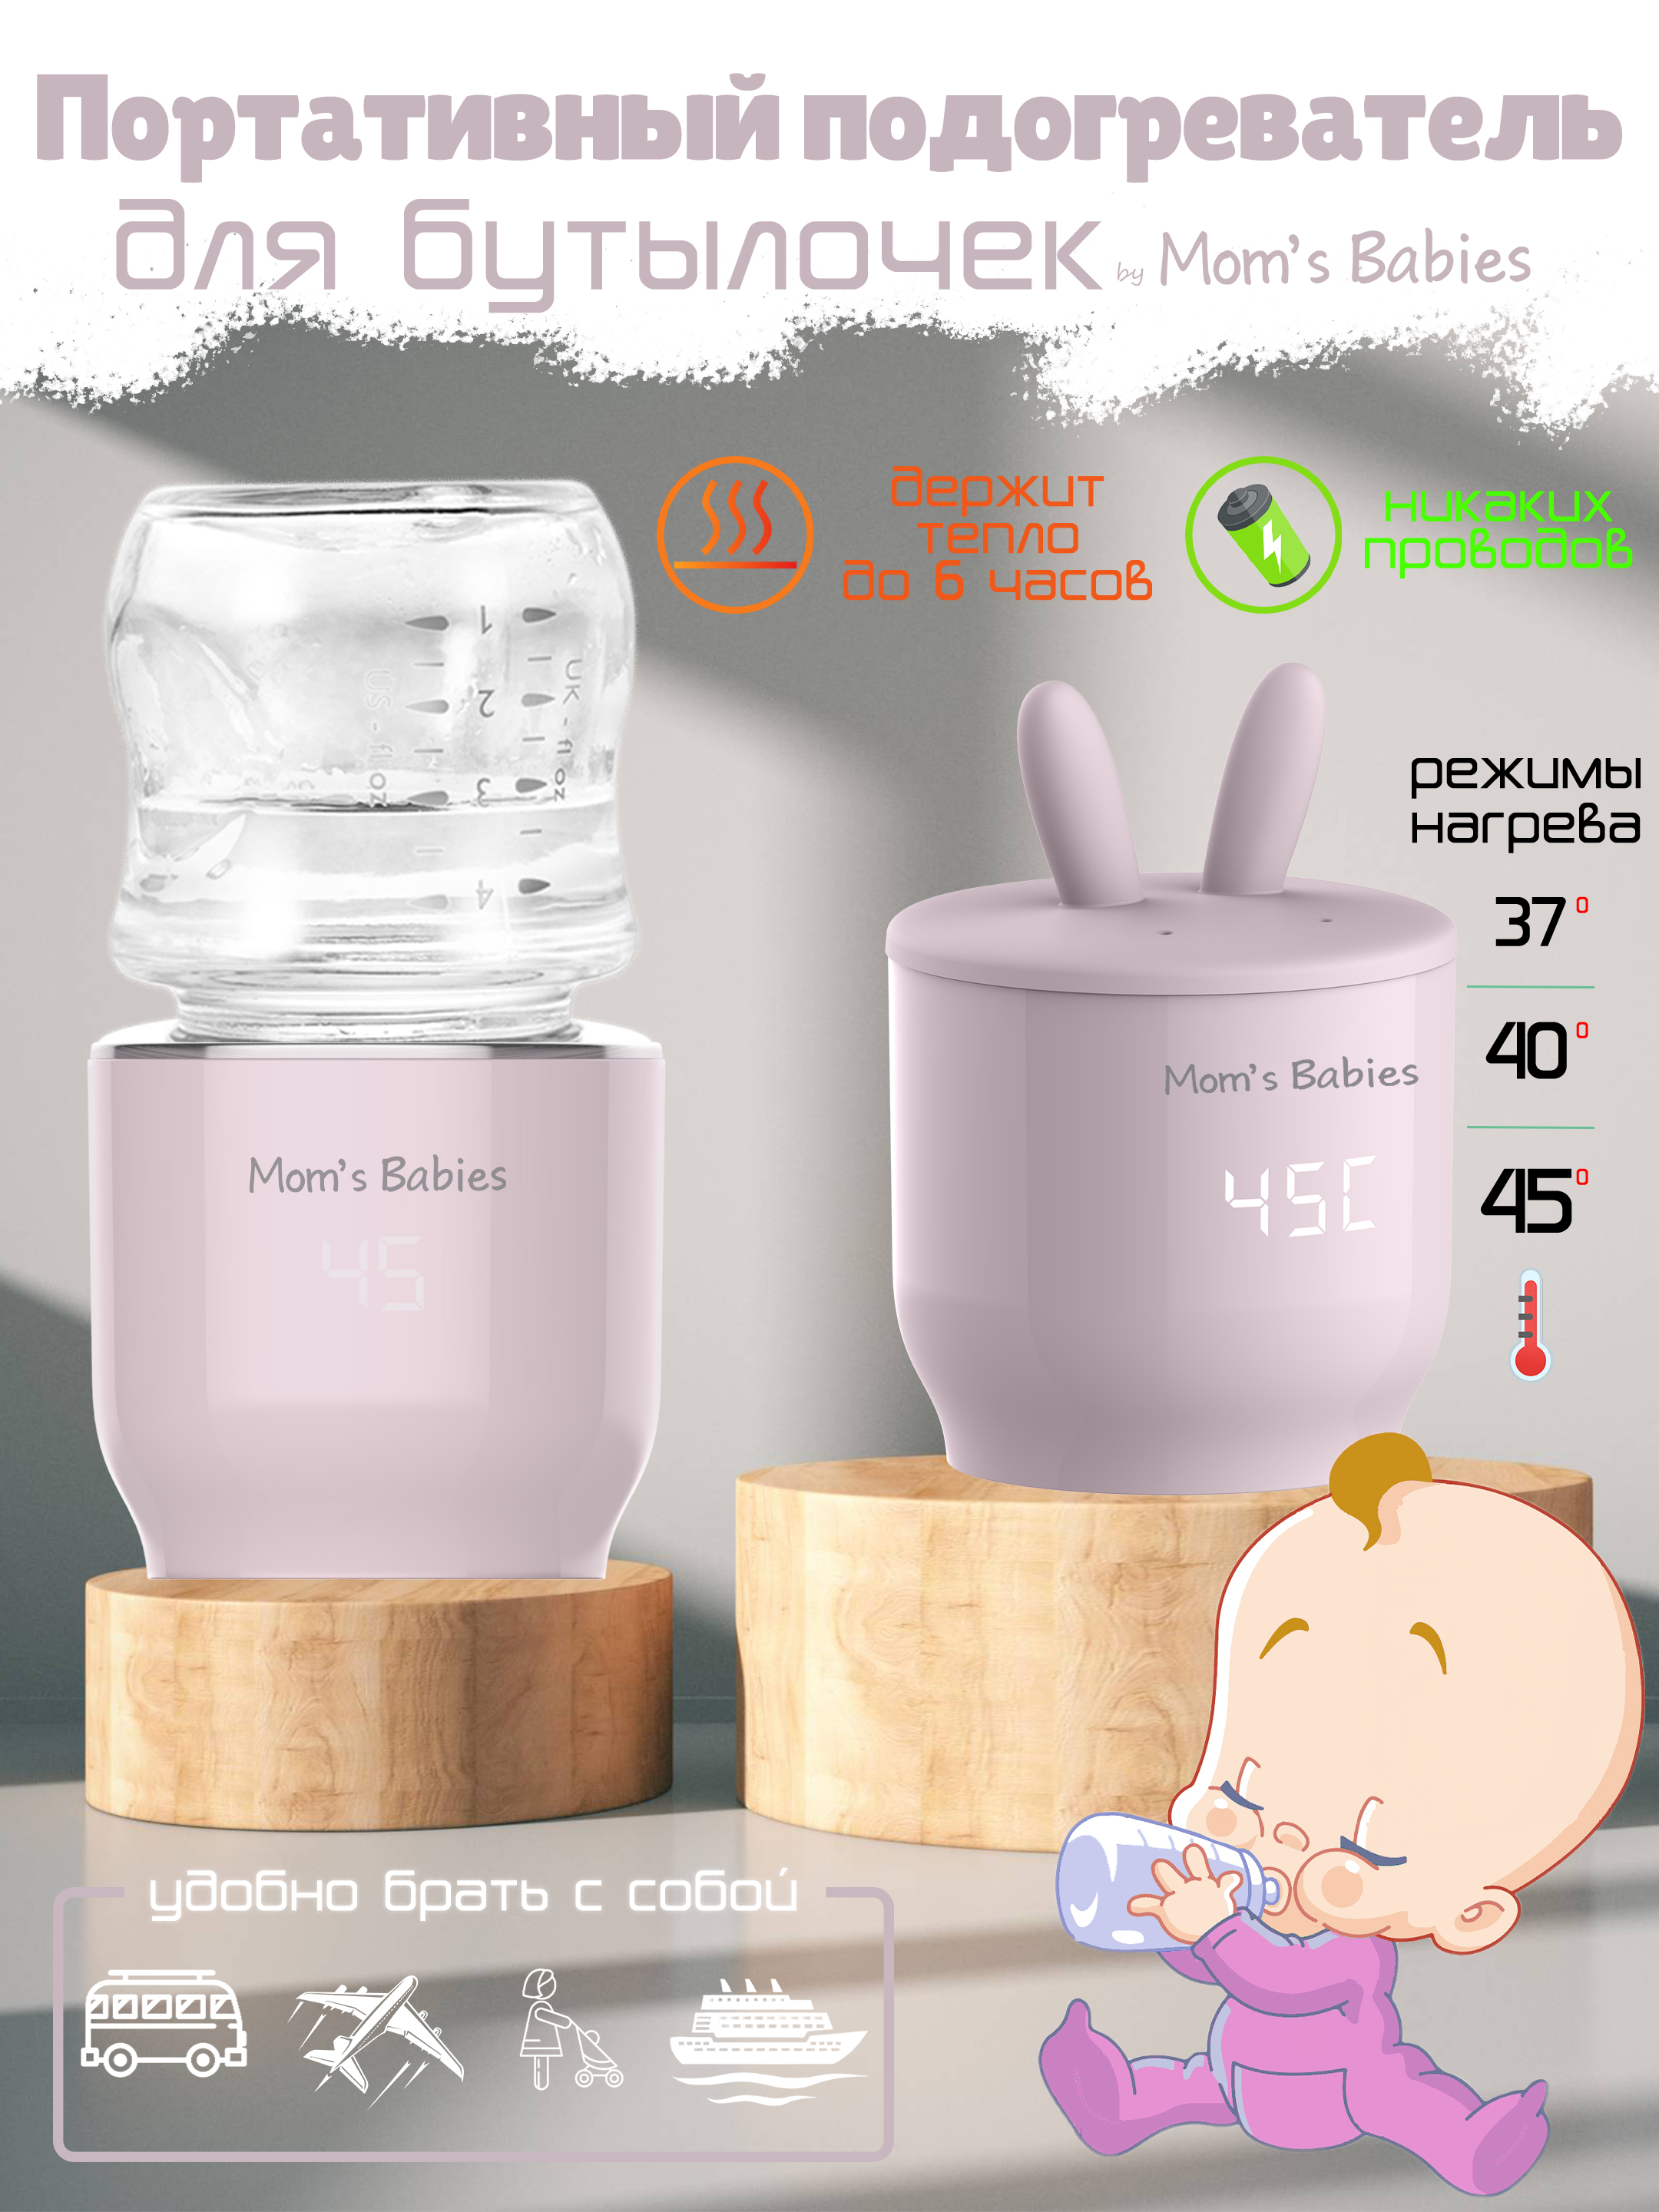 Портативный подогреватель Mom's Babies FS01 для бутылочек и детского питания розовый